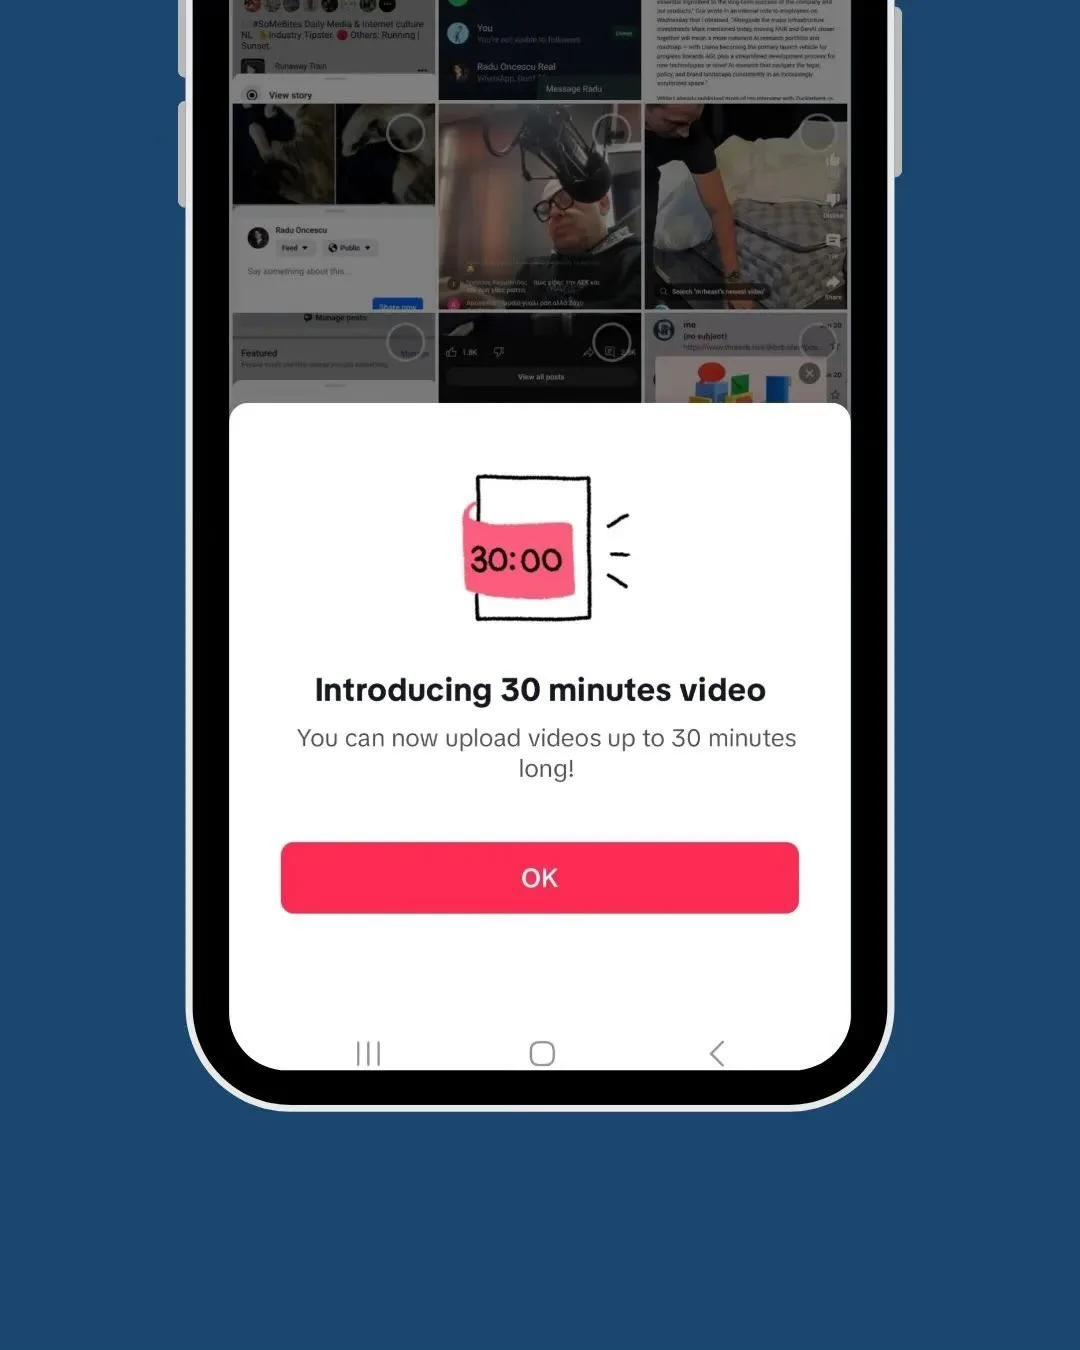 TikTok is testing 30 min long video uploads